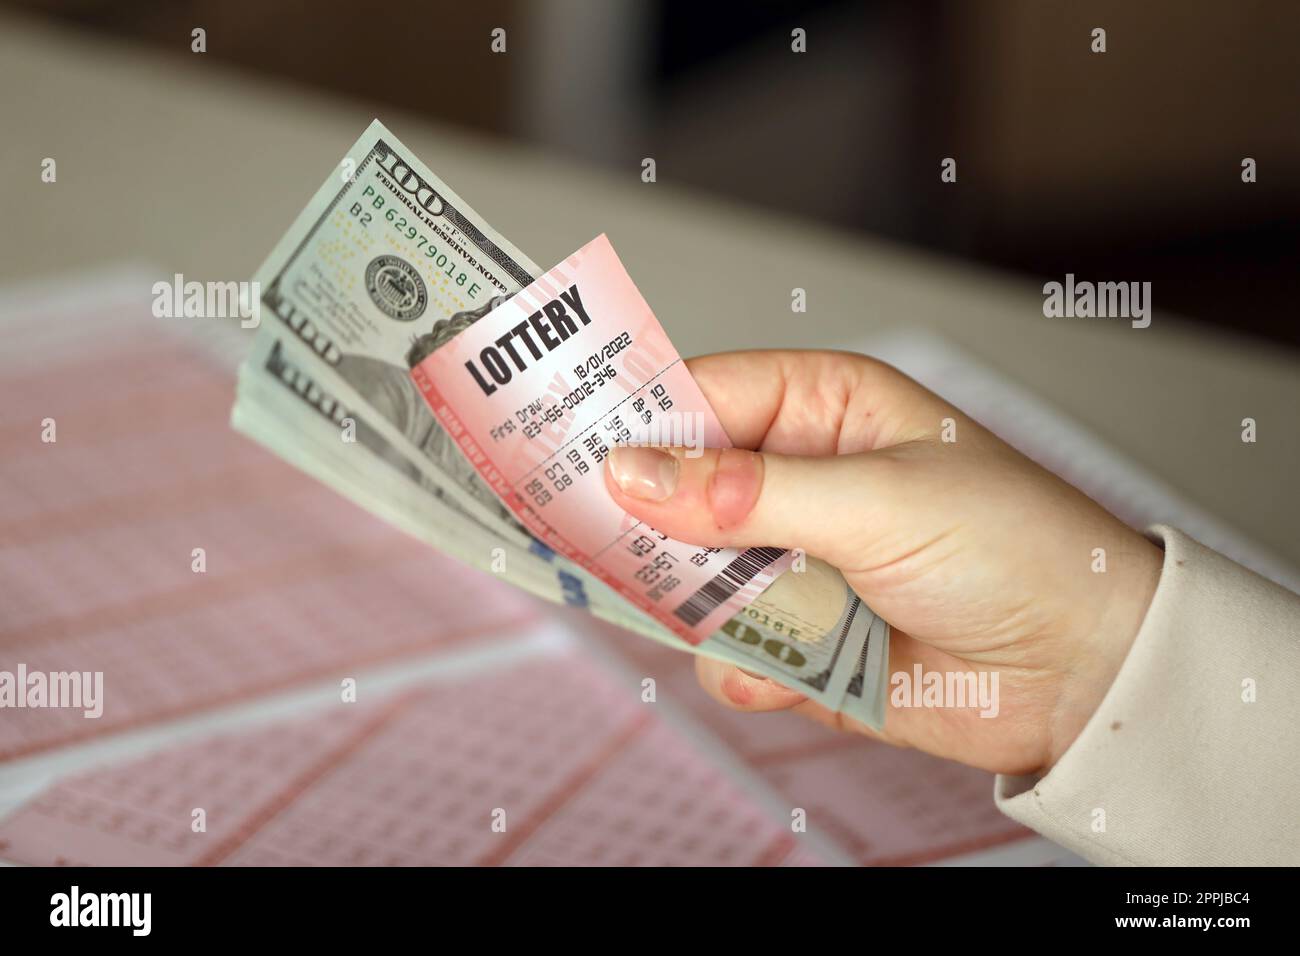 Une jeune femme tient le billet de loterie avec une rangée complète de chiffres et de billets de dollar sur le fond des feuilles vierges de loterie Banque D'Images